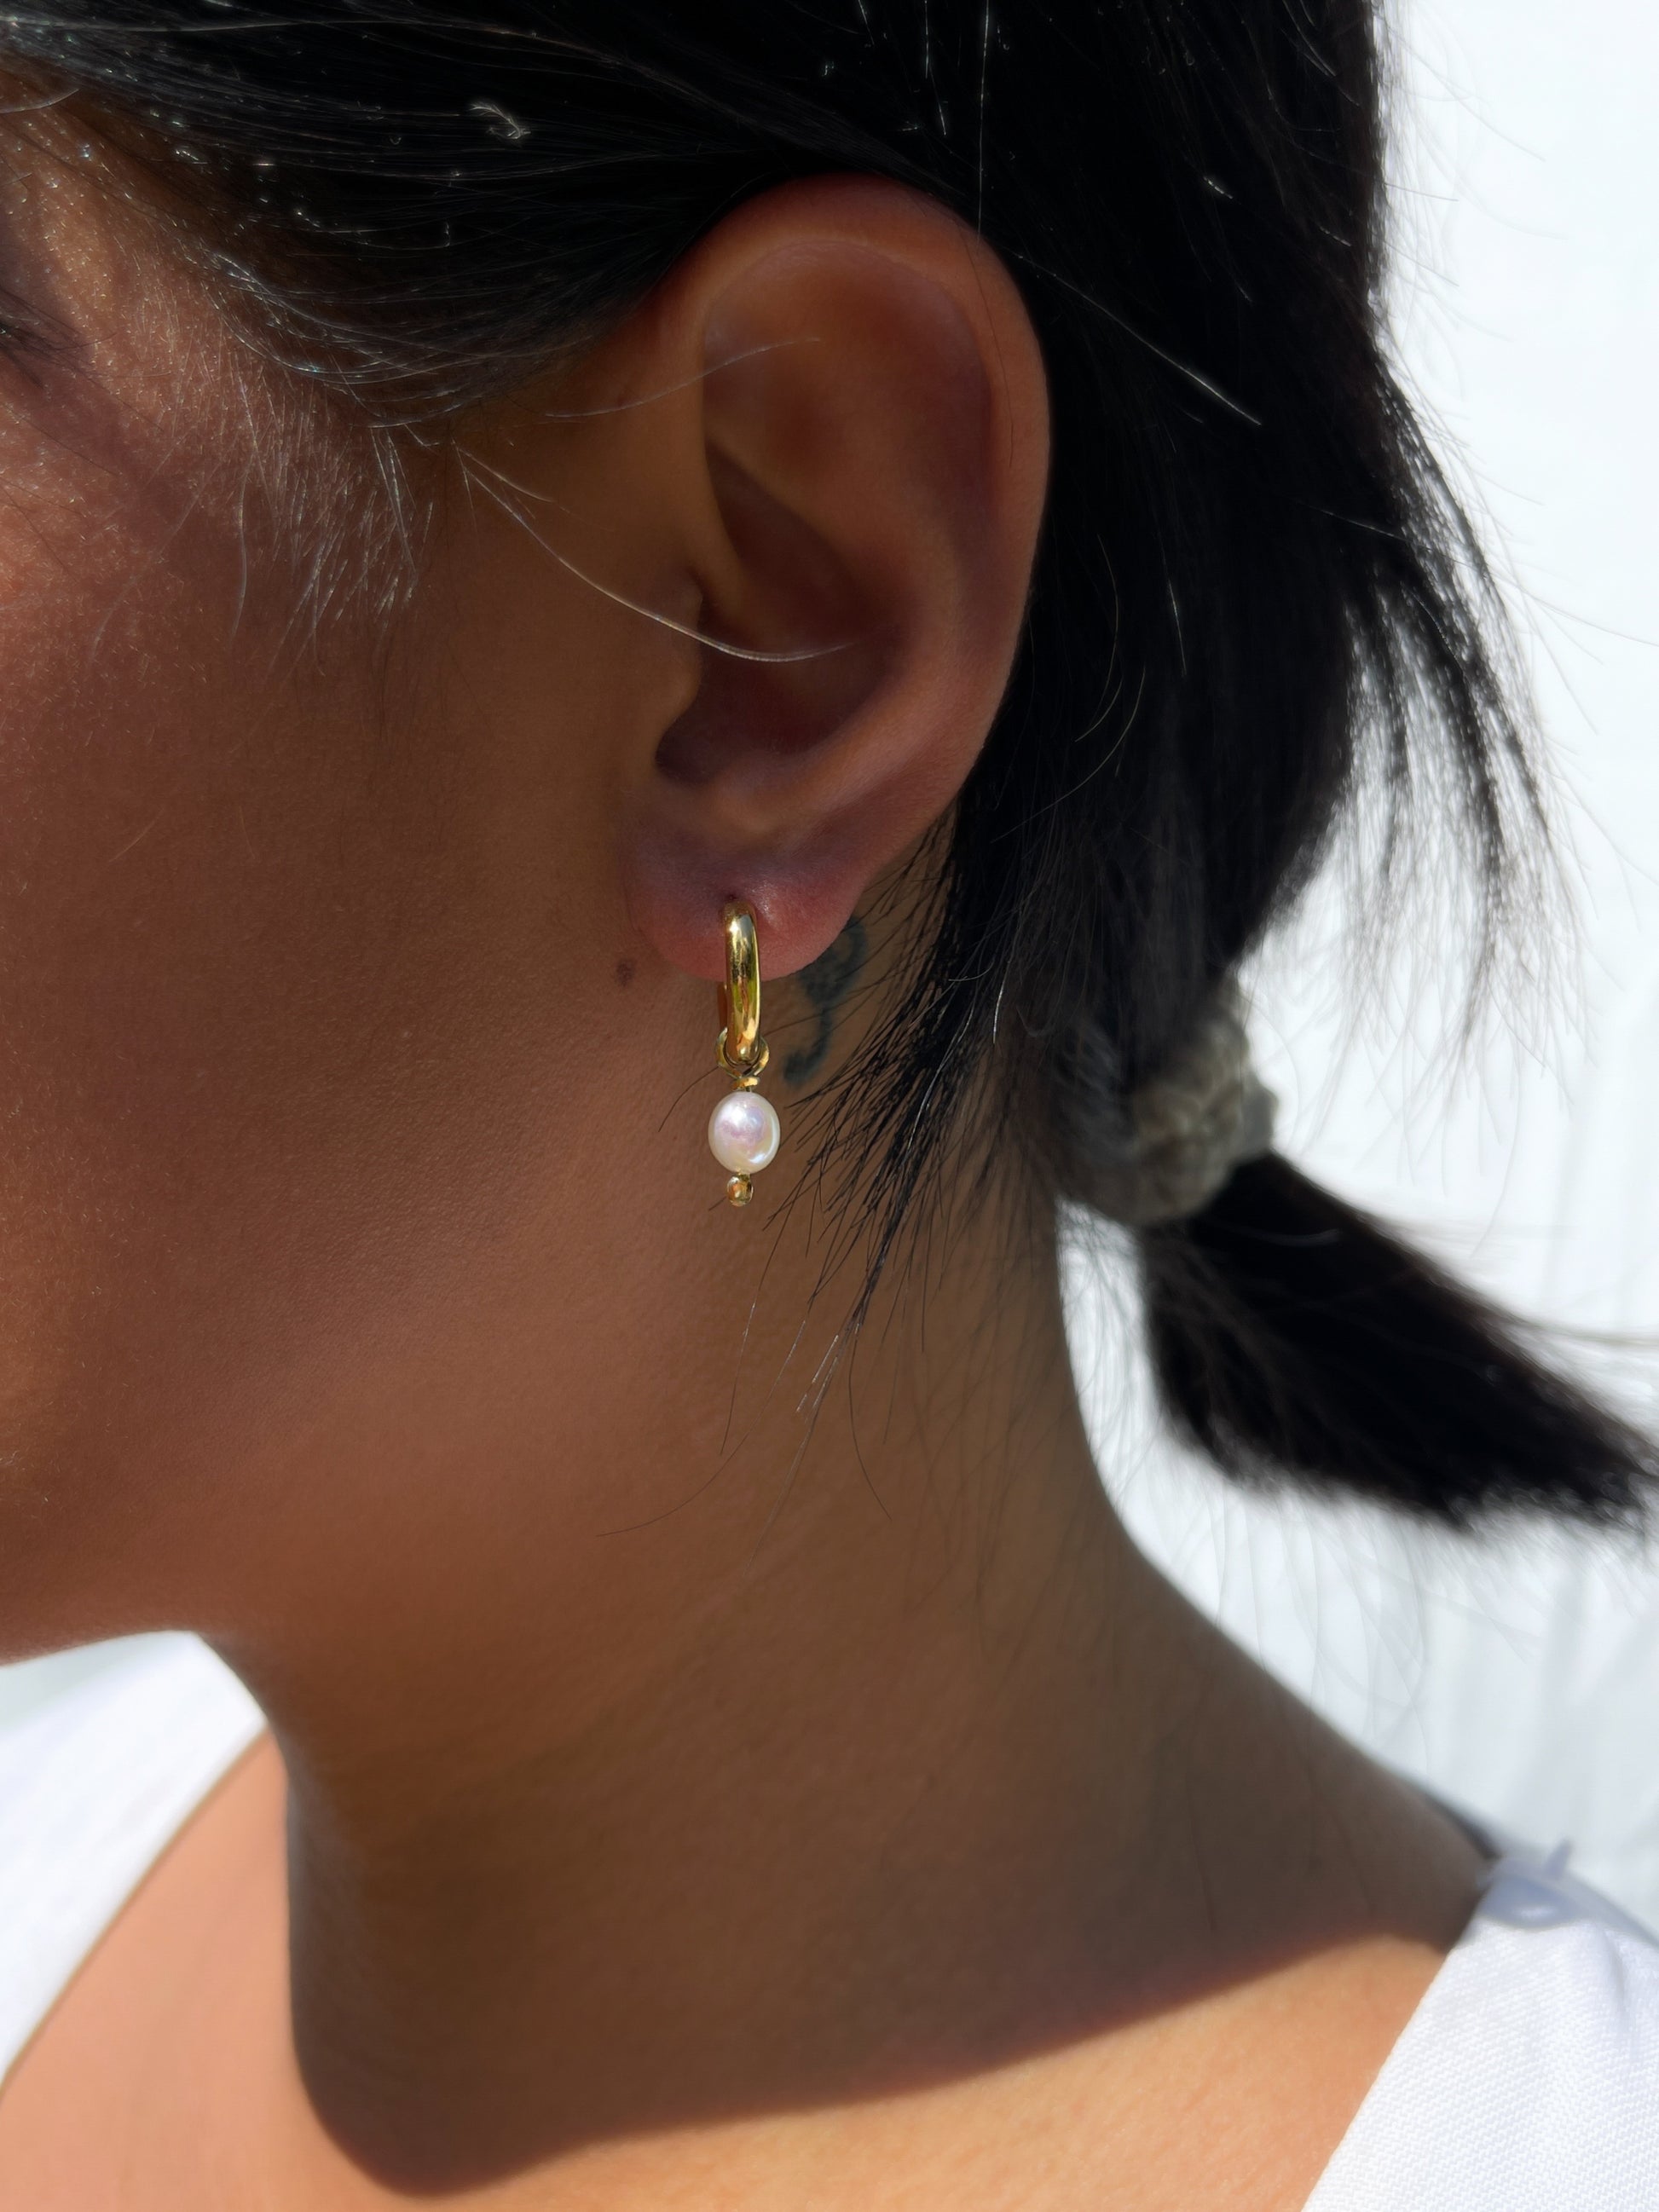 Newest Asymmetry Metal Letter V Hoop Earrings for Women Korean